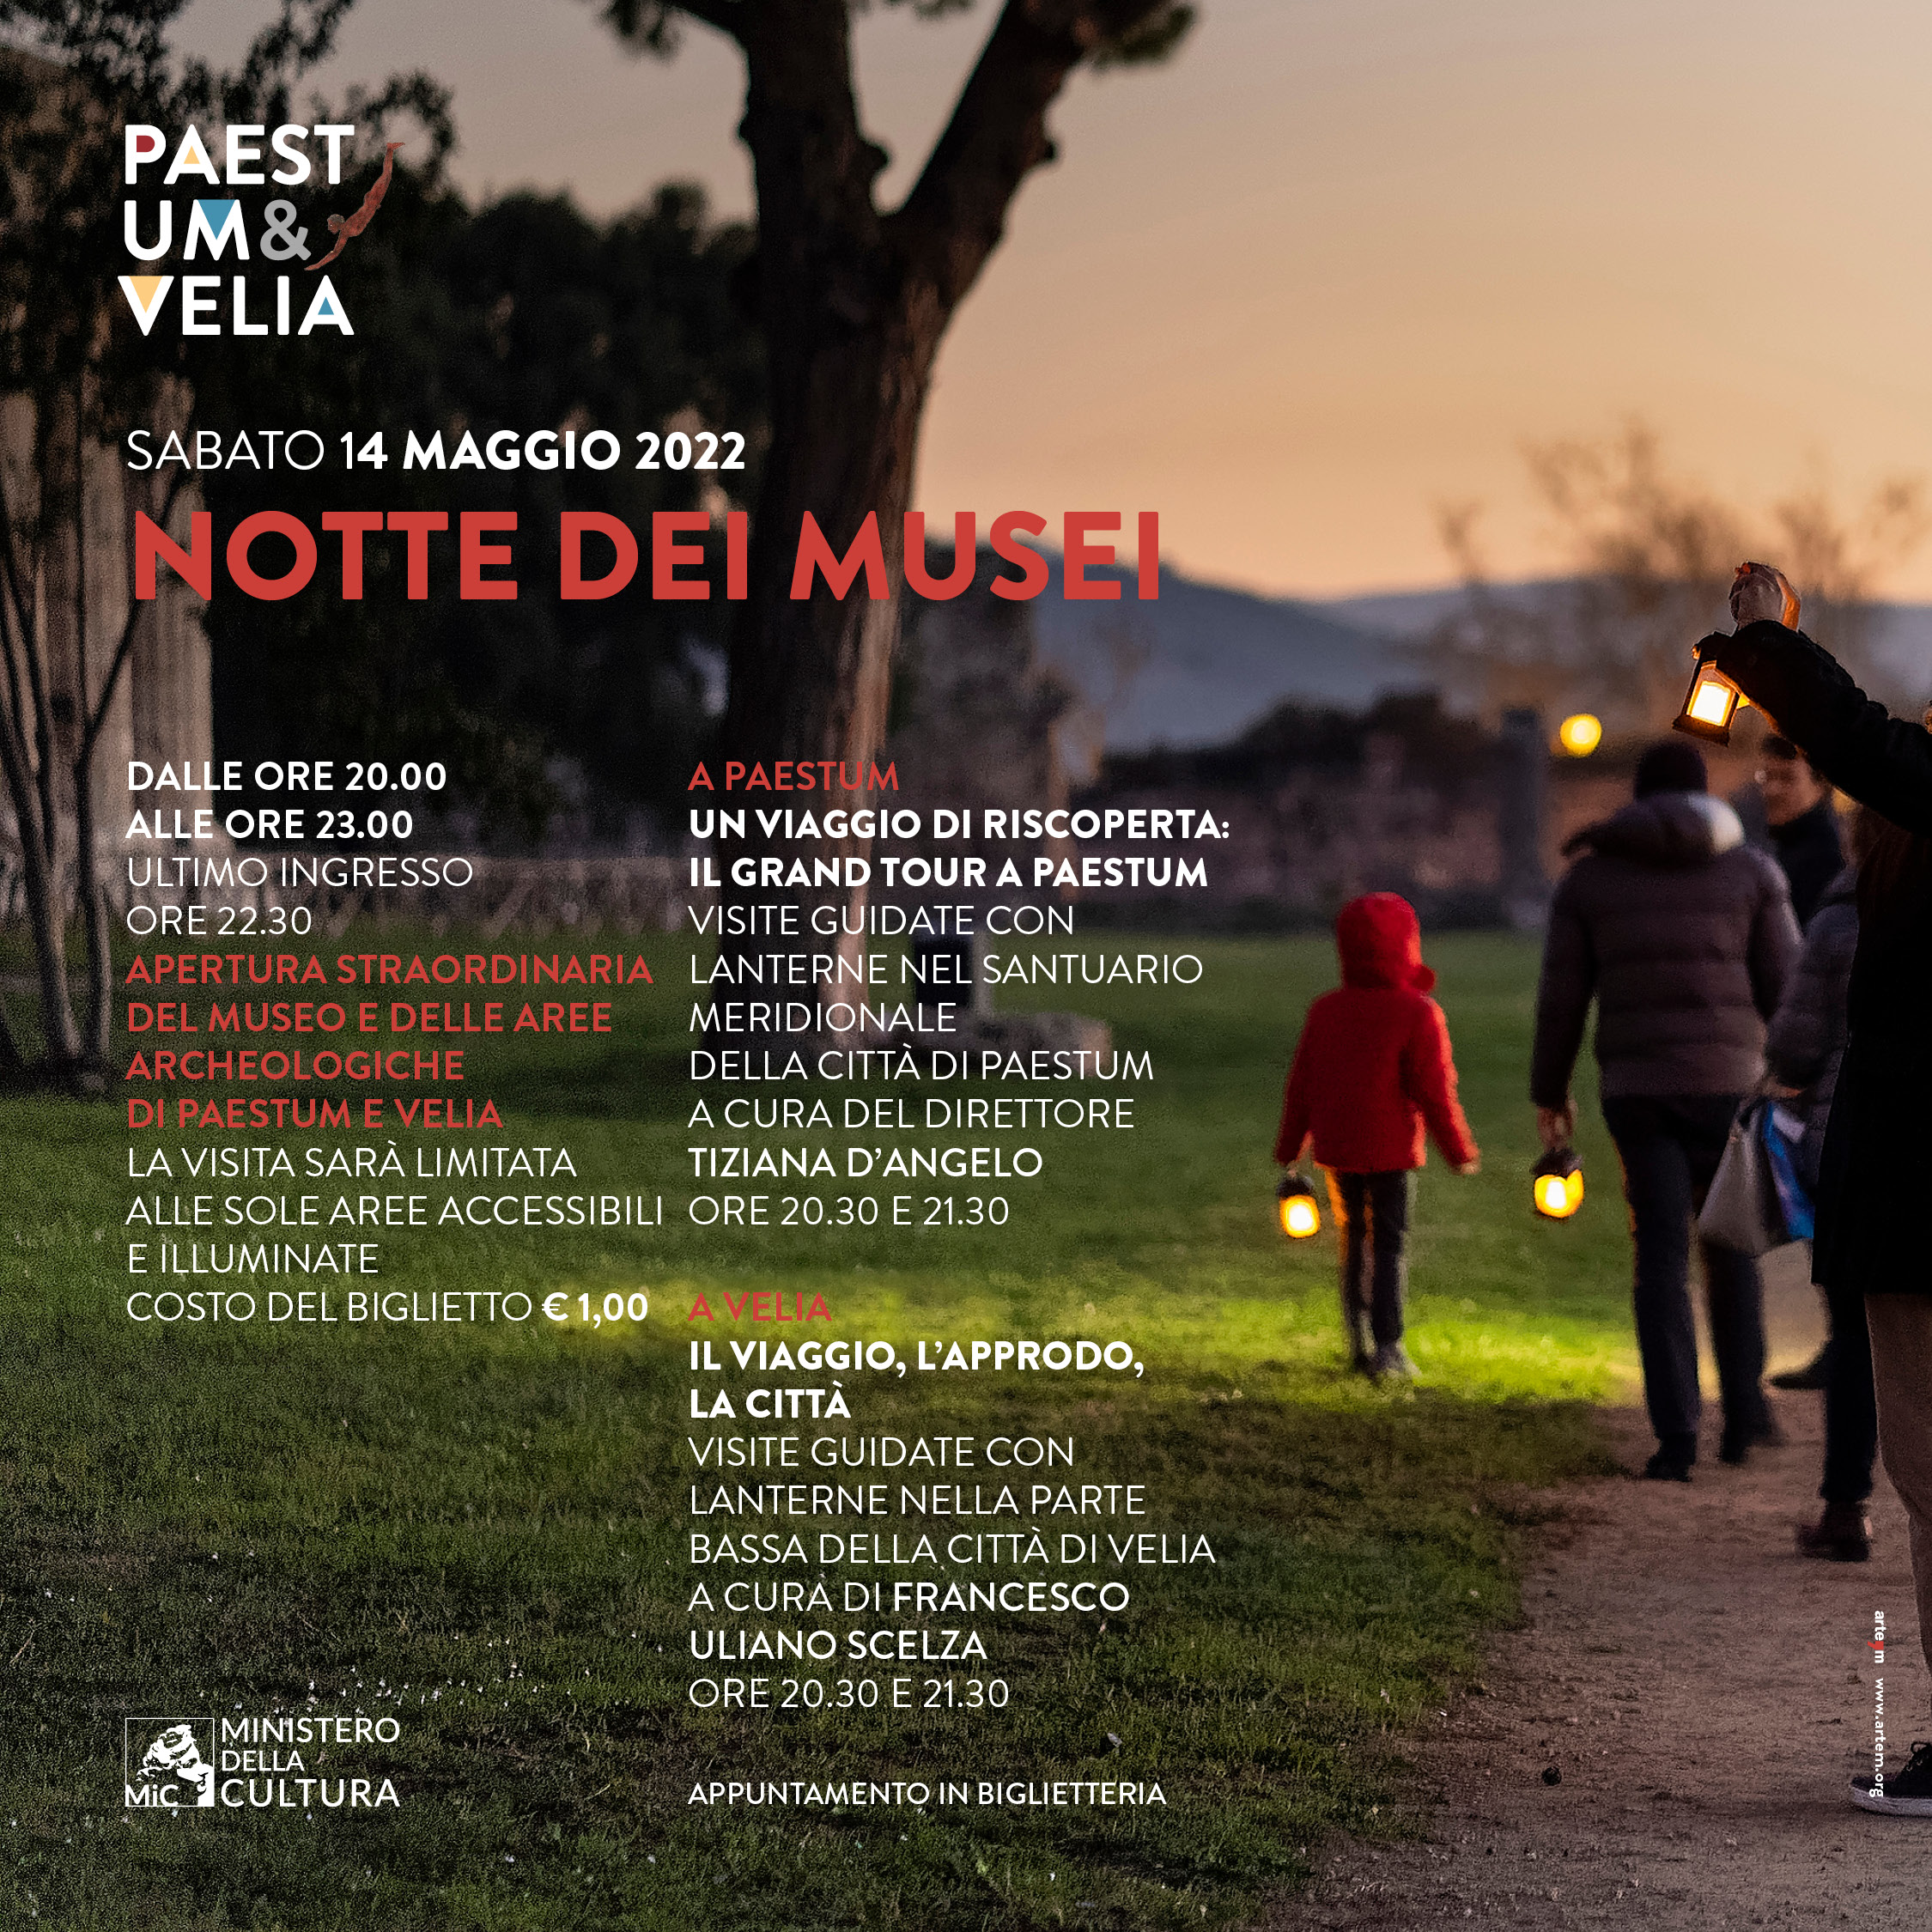 Paestum-Velia: Notte europea dei Musei,  visite guidate con lanterne